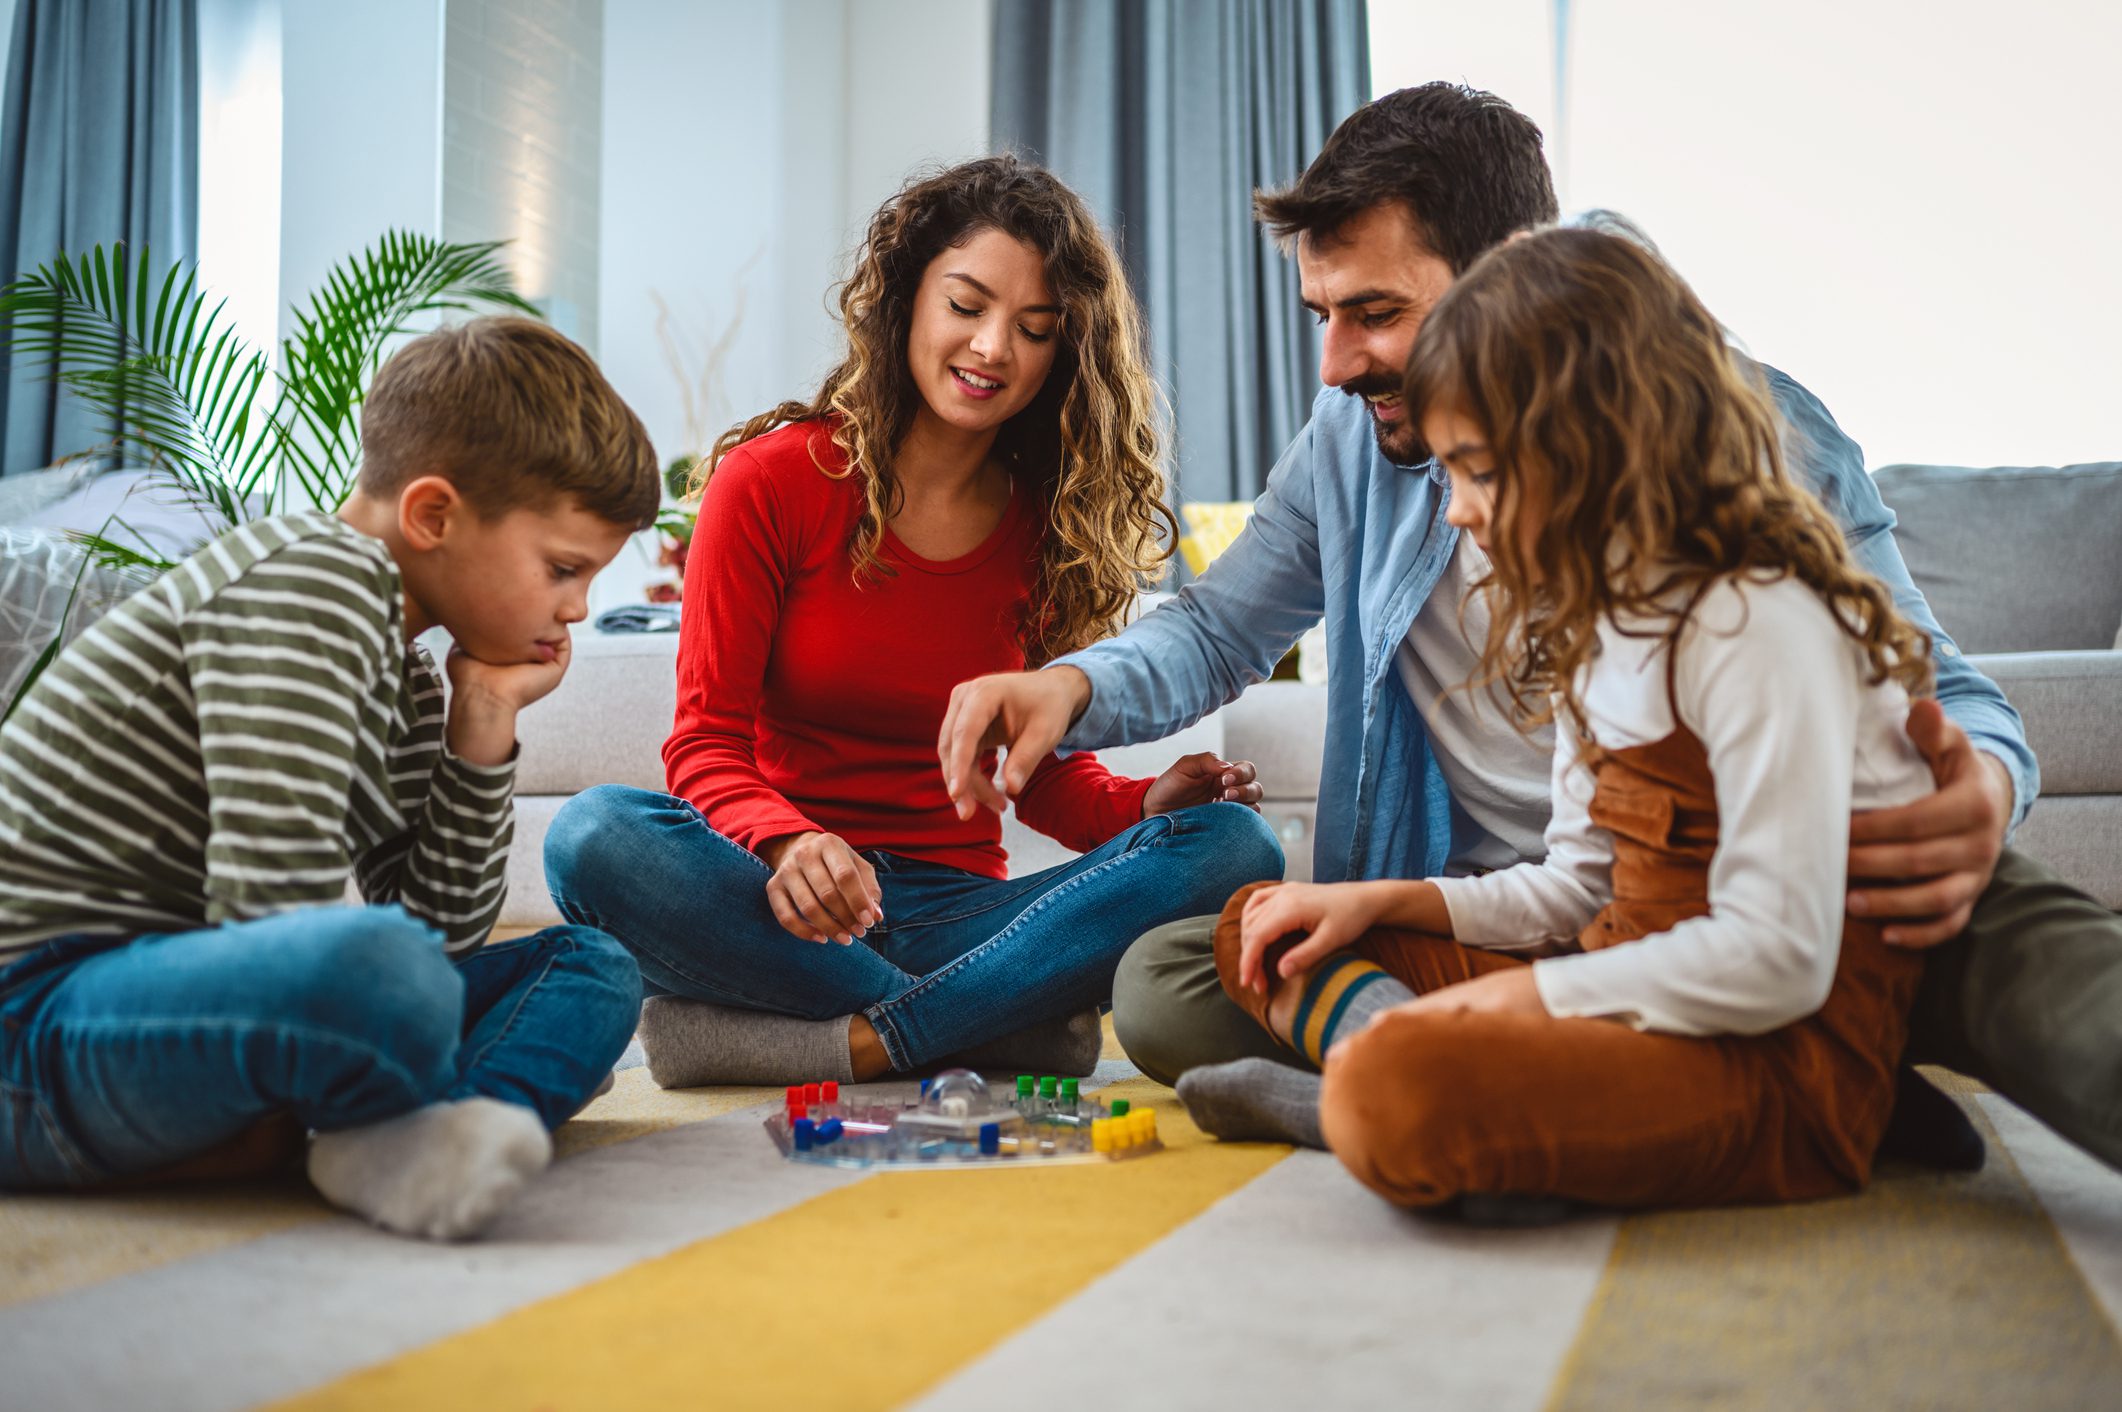 Egy család egy nagyonn fiú és egy kisebb lánygermekkel társasjátékoznak a nappali szőnyegén.